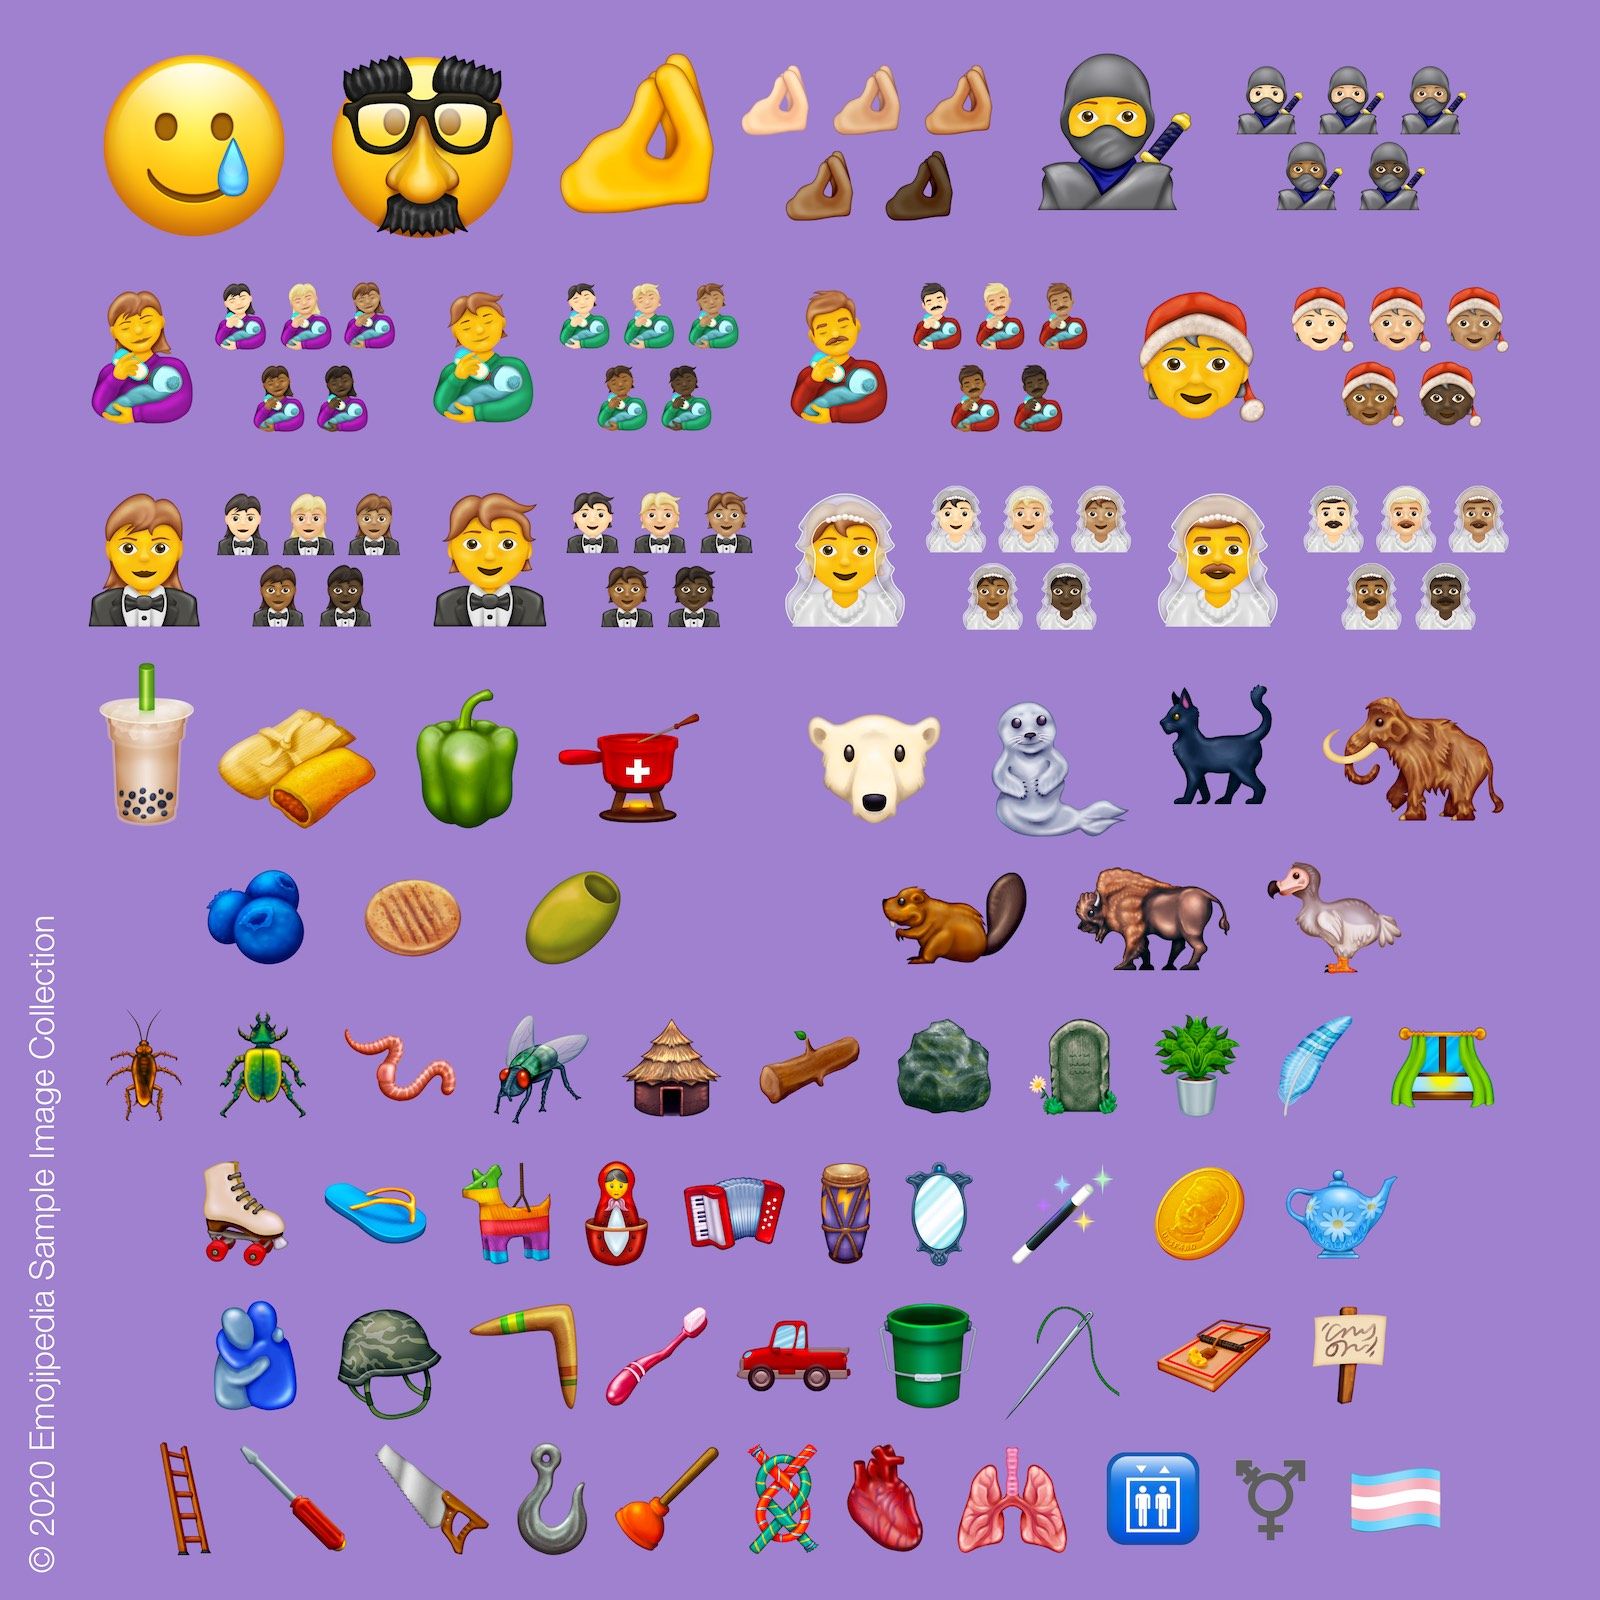 Contoh koleksi gambar dari Emojipedia 2020